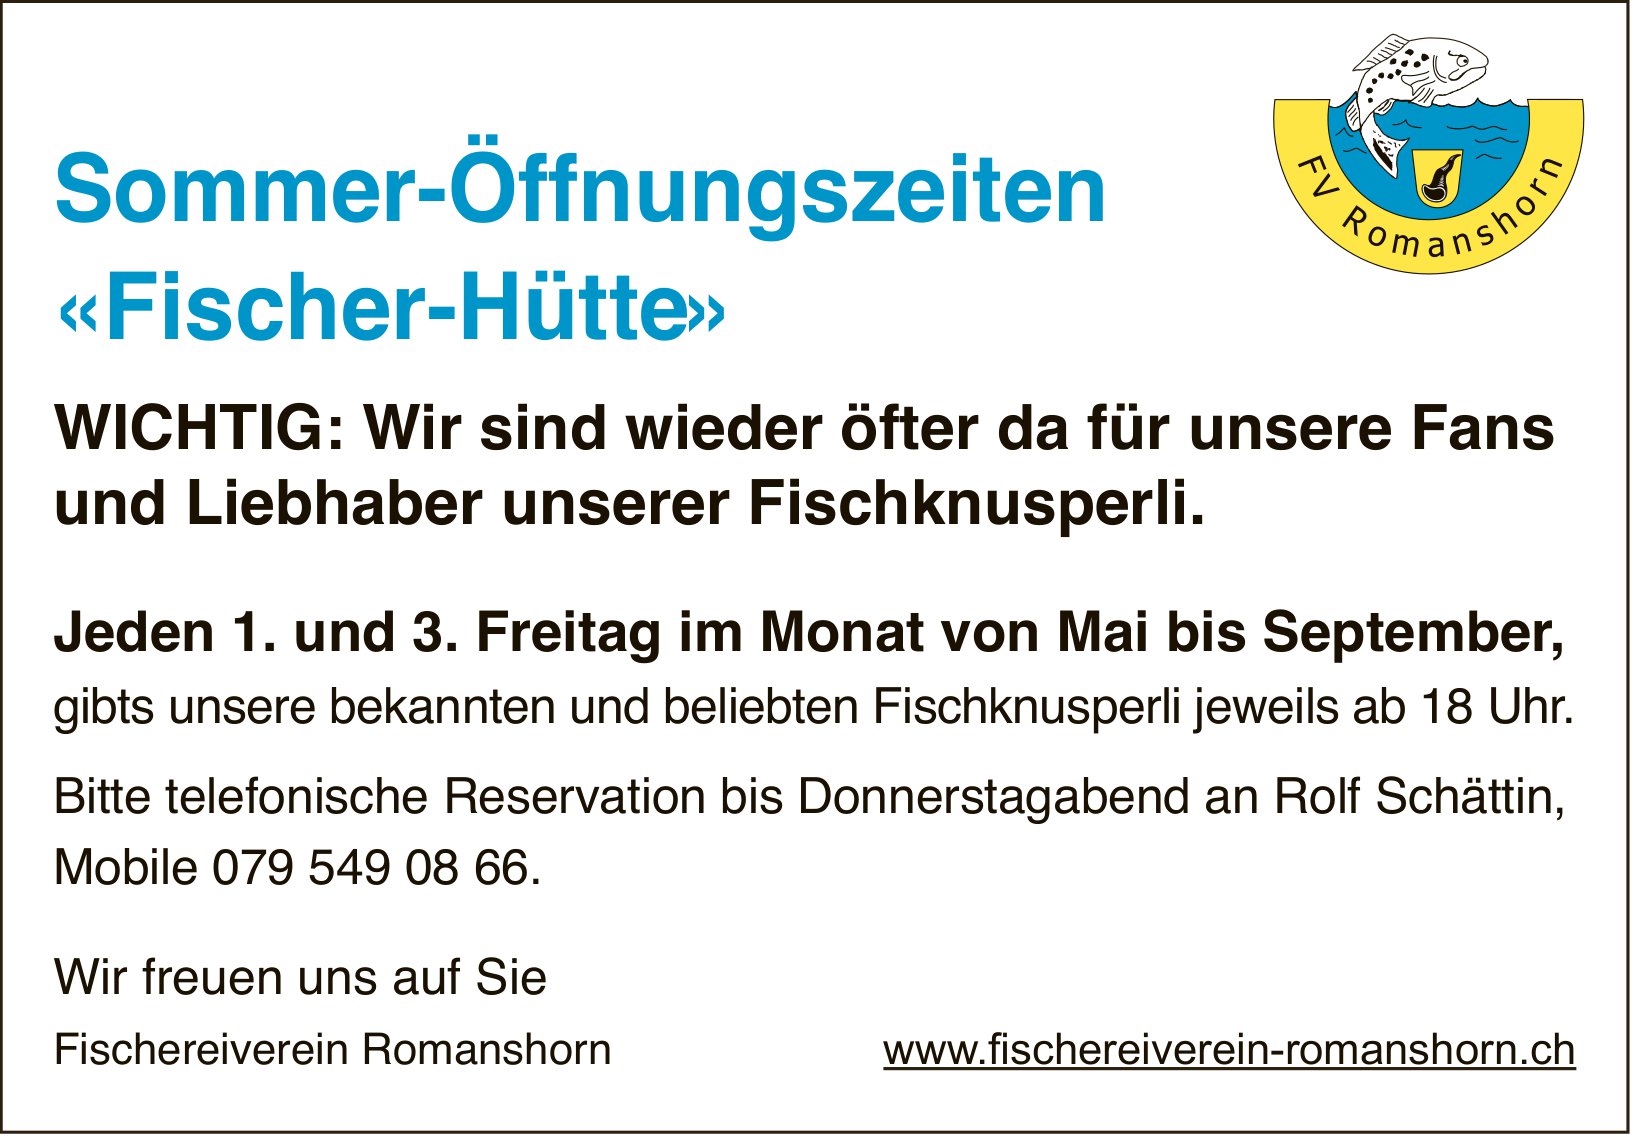 Fischereiverein Romanshorn, Sommer-Öffnungszeiten «Fischer-Hütte»